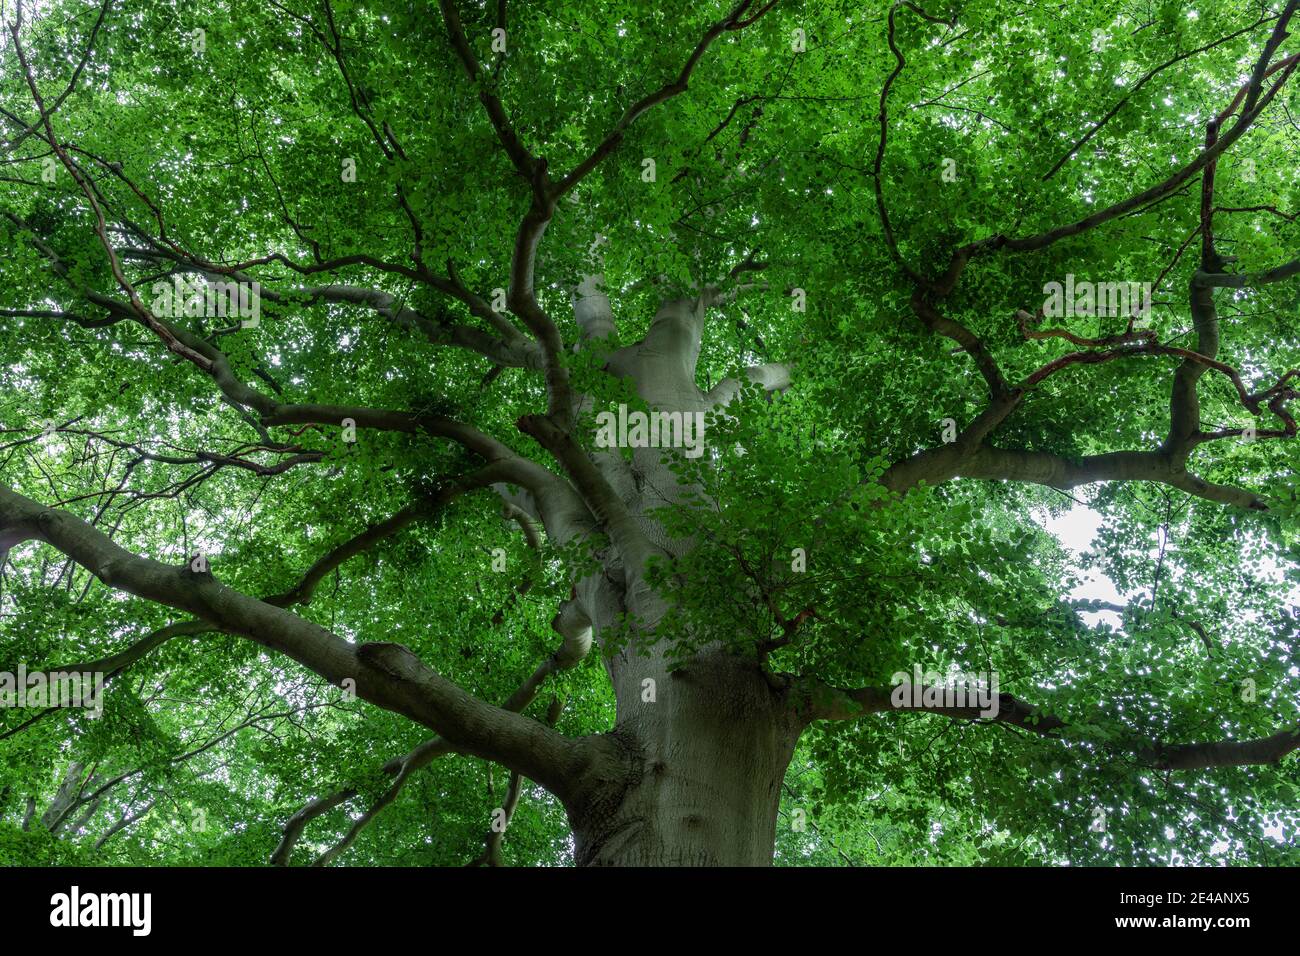 Árbol de hoja caduca, vista de la copa del árbol Foto de stock